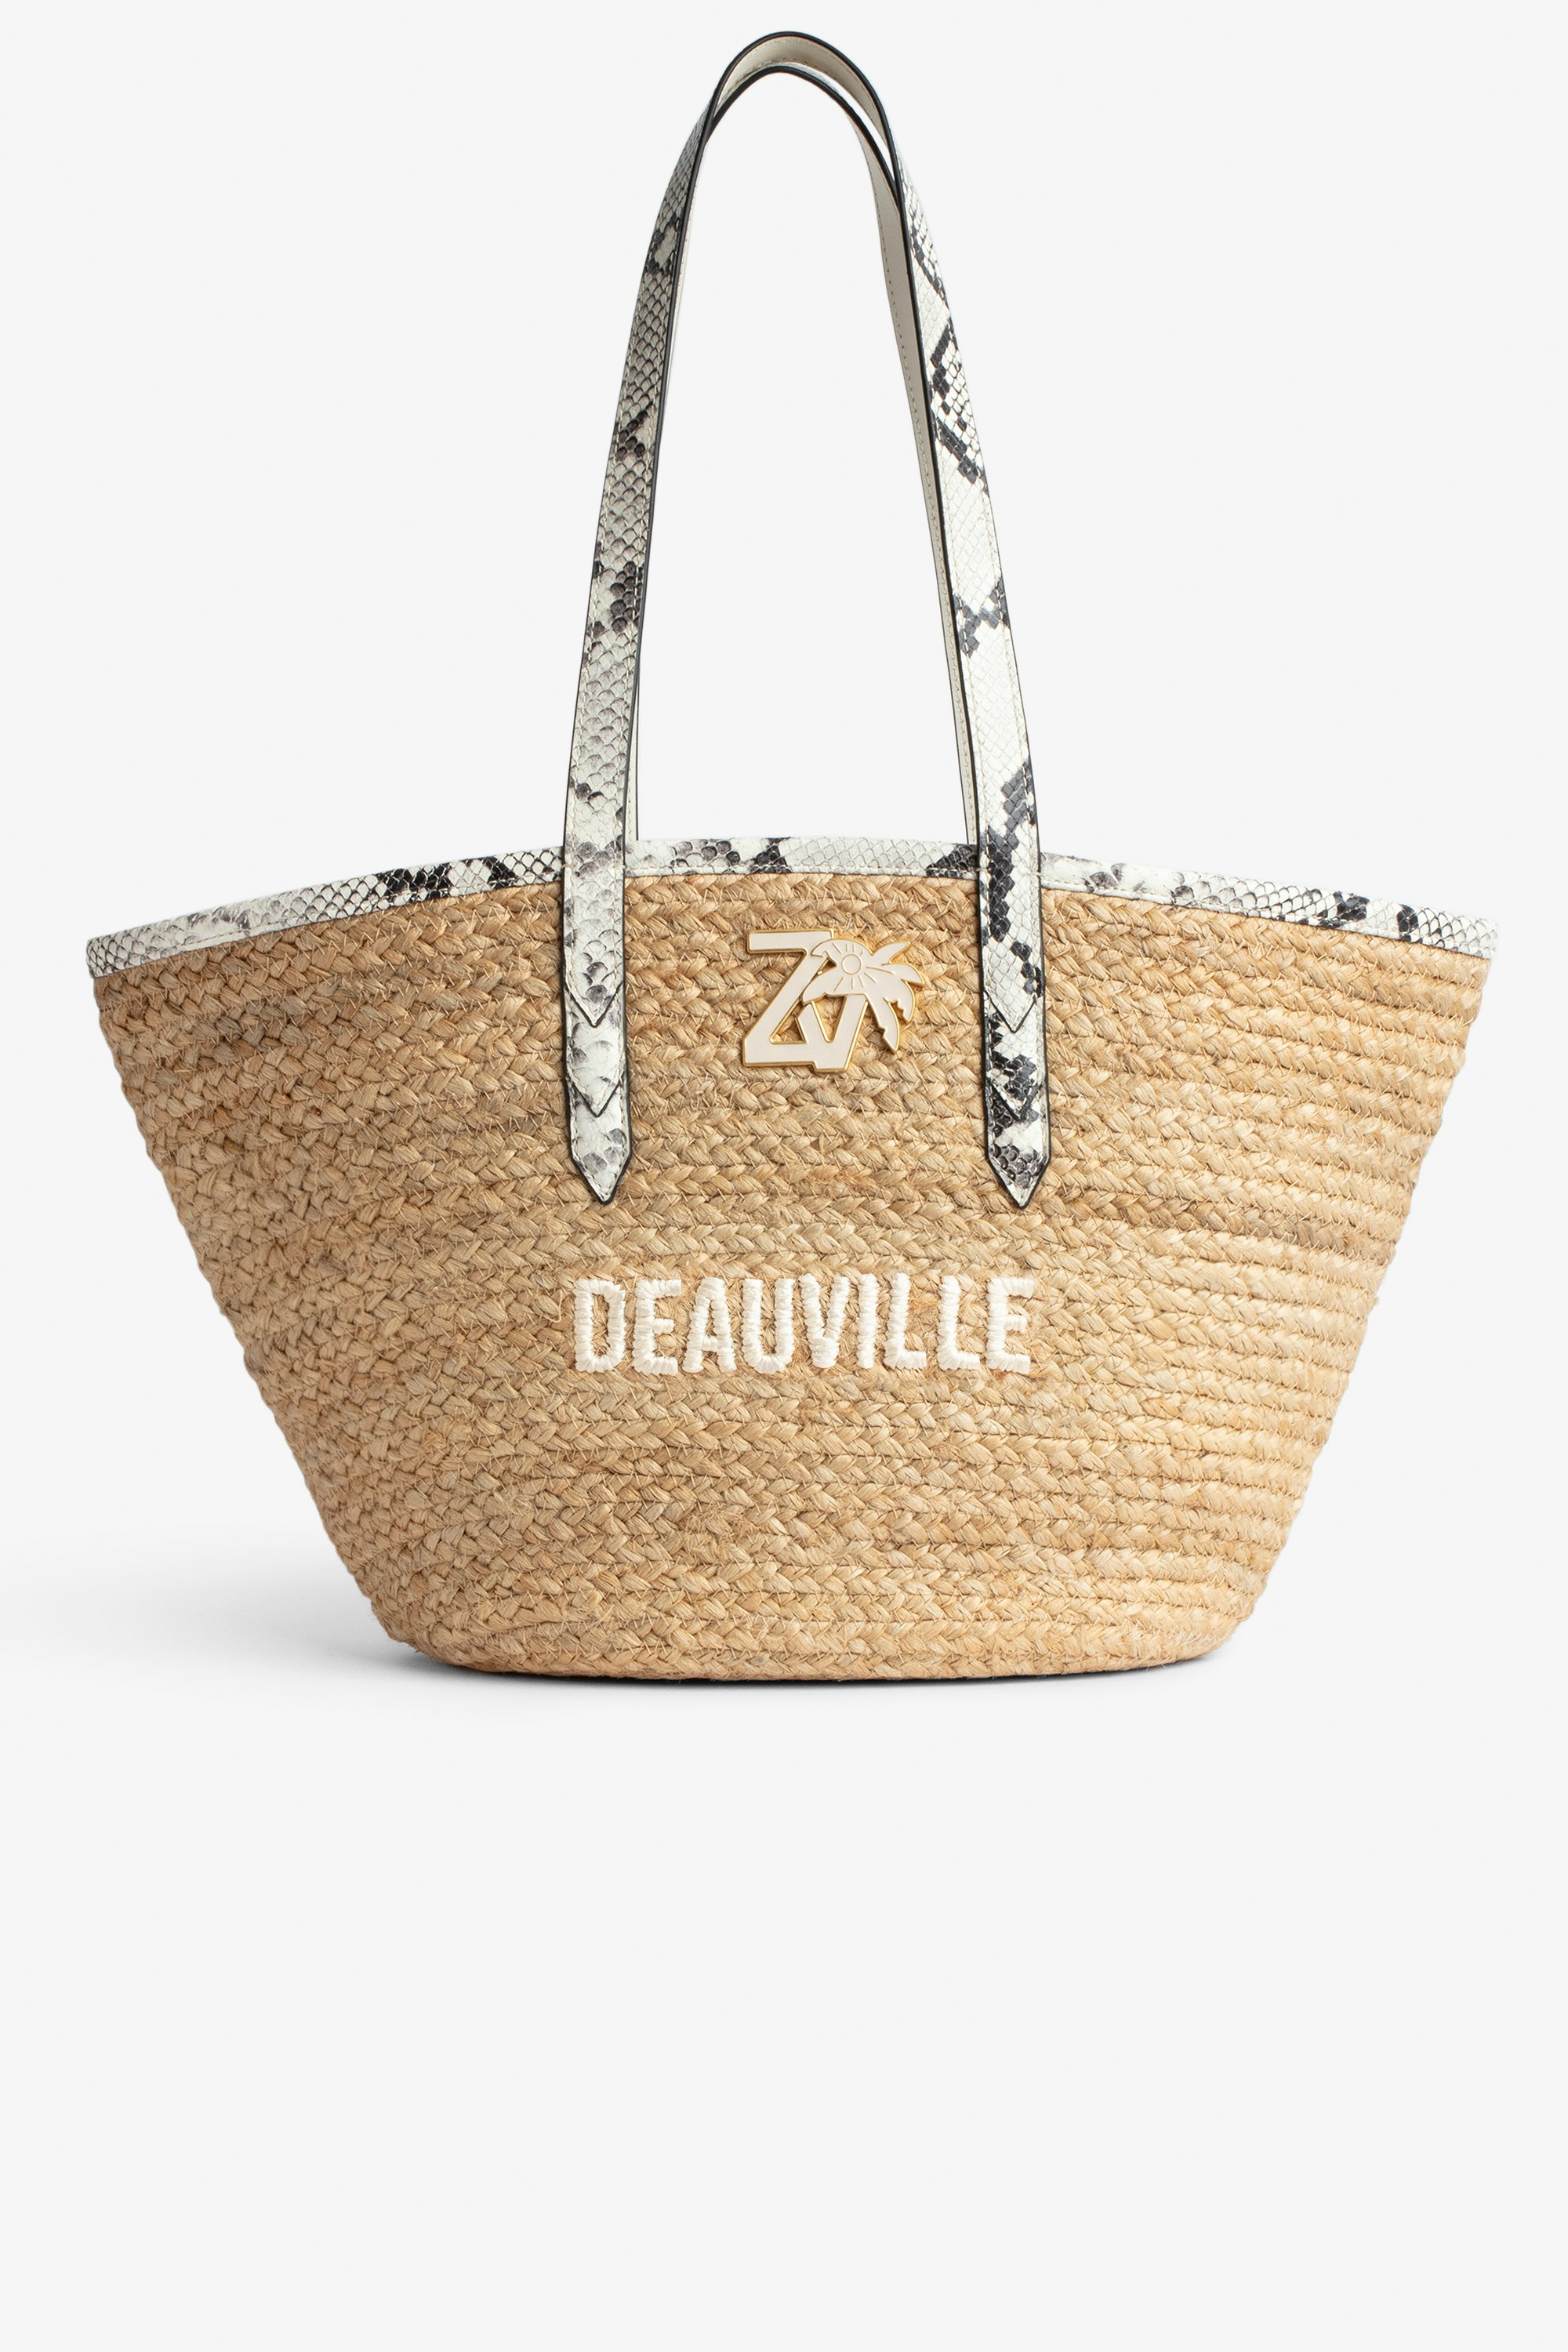 Borsa Le Beach Bag Borsa in paglia con manici in pelle ecru effetto pitone, con ricamo "Deauville" e impreziosita da un charm ZV - Donna